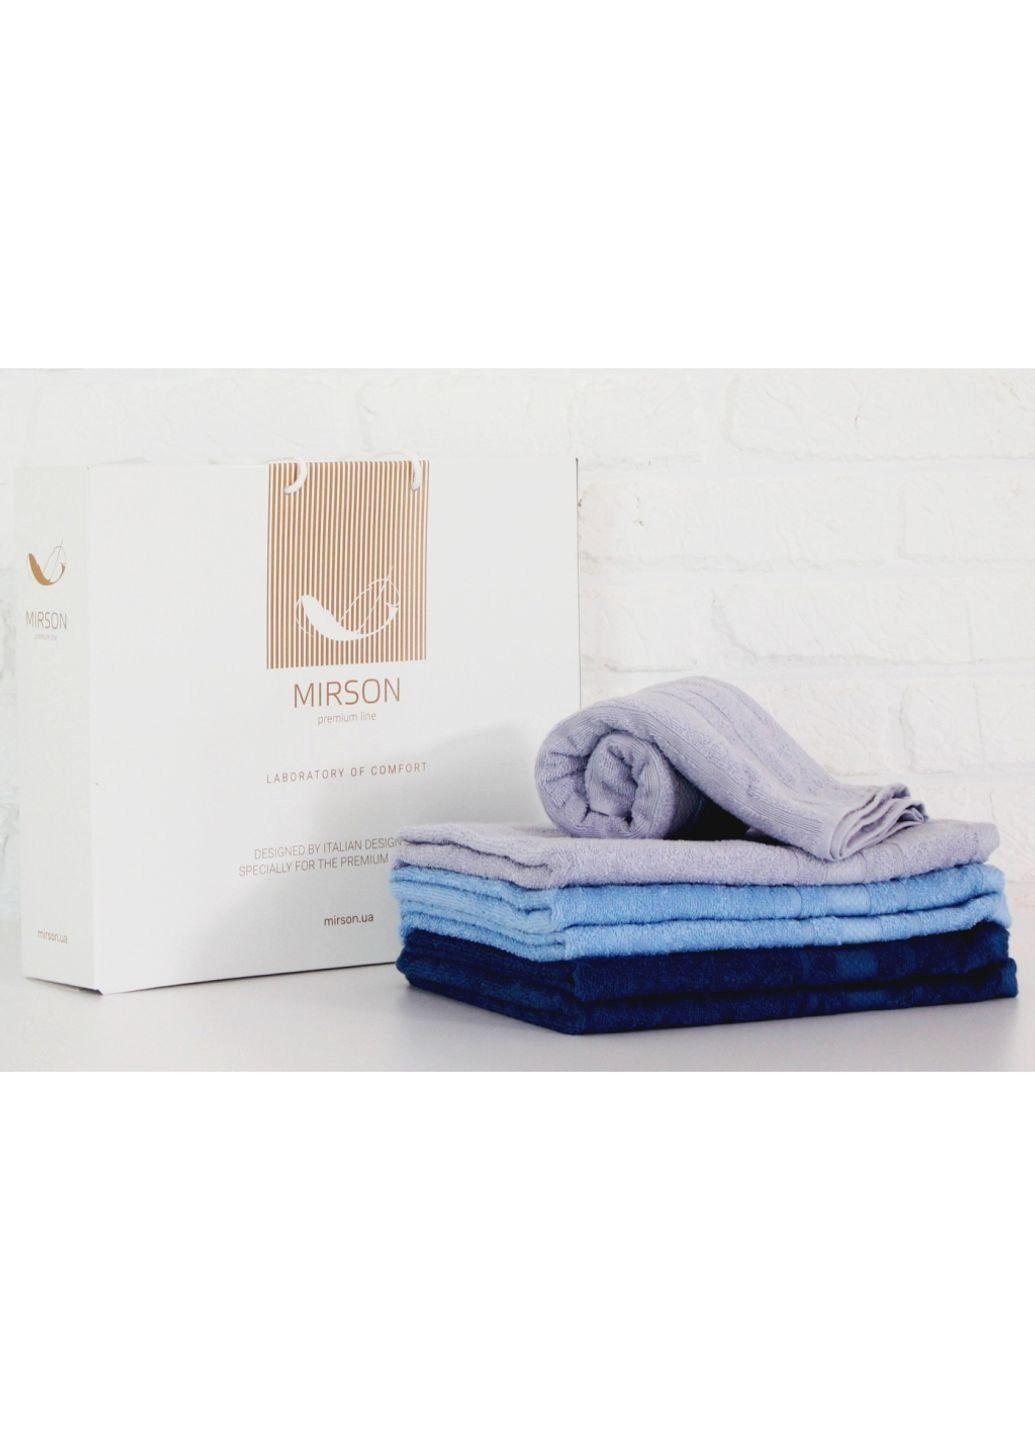 No Brand полотенце mirson набор банных №5096 elite softnes pure 70х140 6 шт (2200003525700) комбинированный производство - Украина